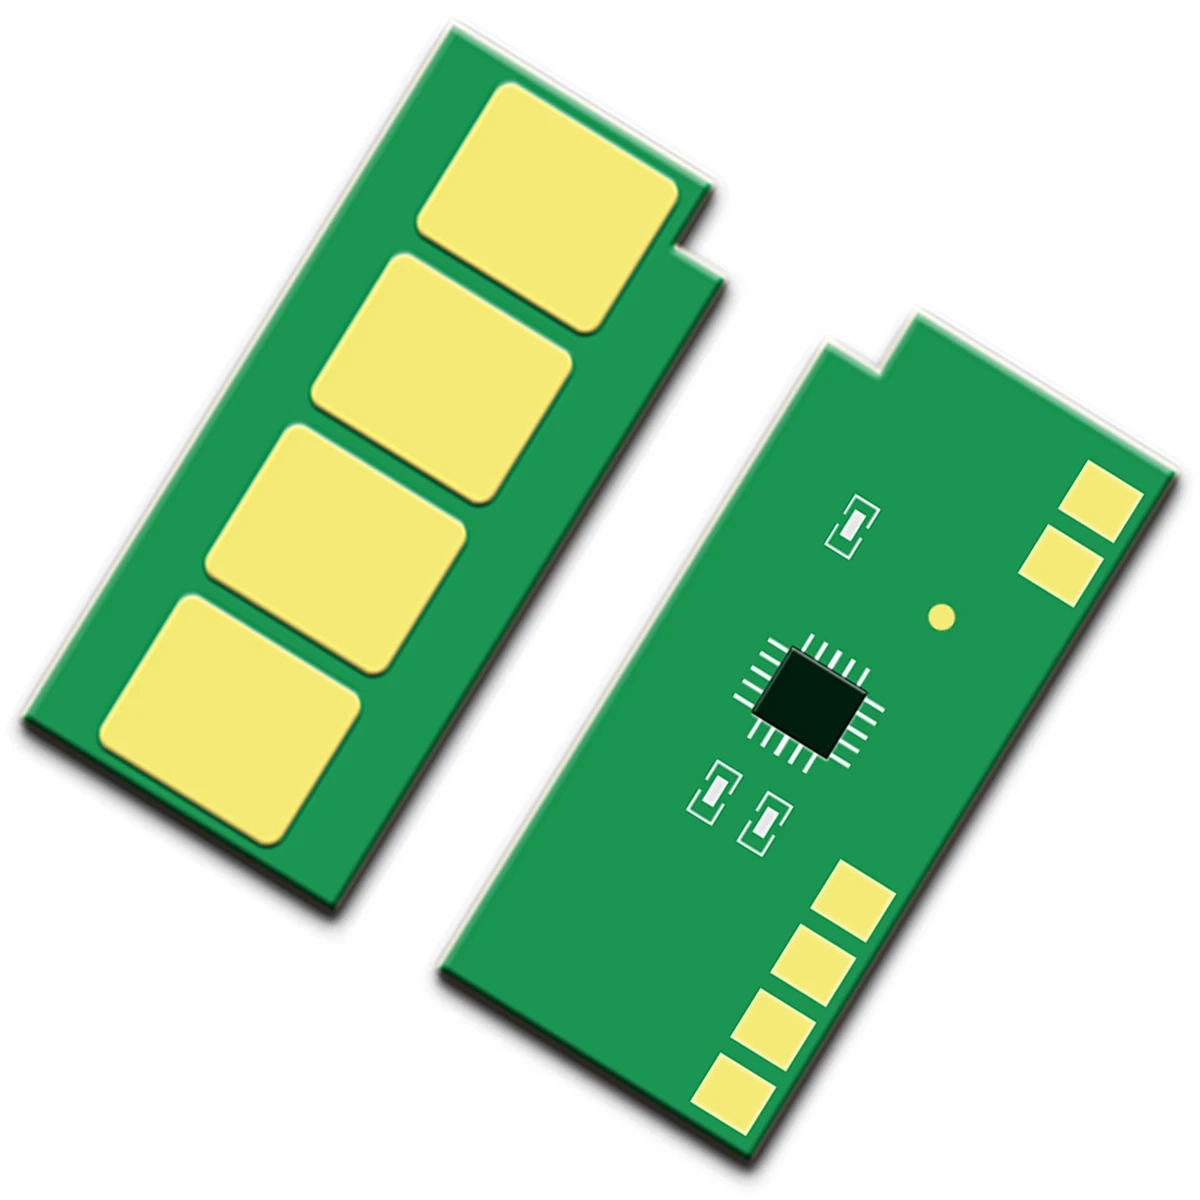 

1pcs. PE-216 PC-216 unlimited Permanent Toner Chip For Pantum P2506 M2506 P2506W PC216 PE216 PE-216 PC-216 unlimited Toner Chip